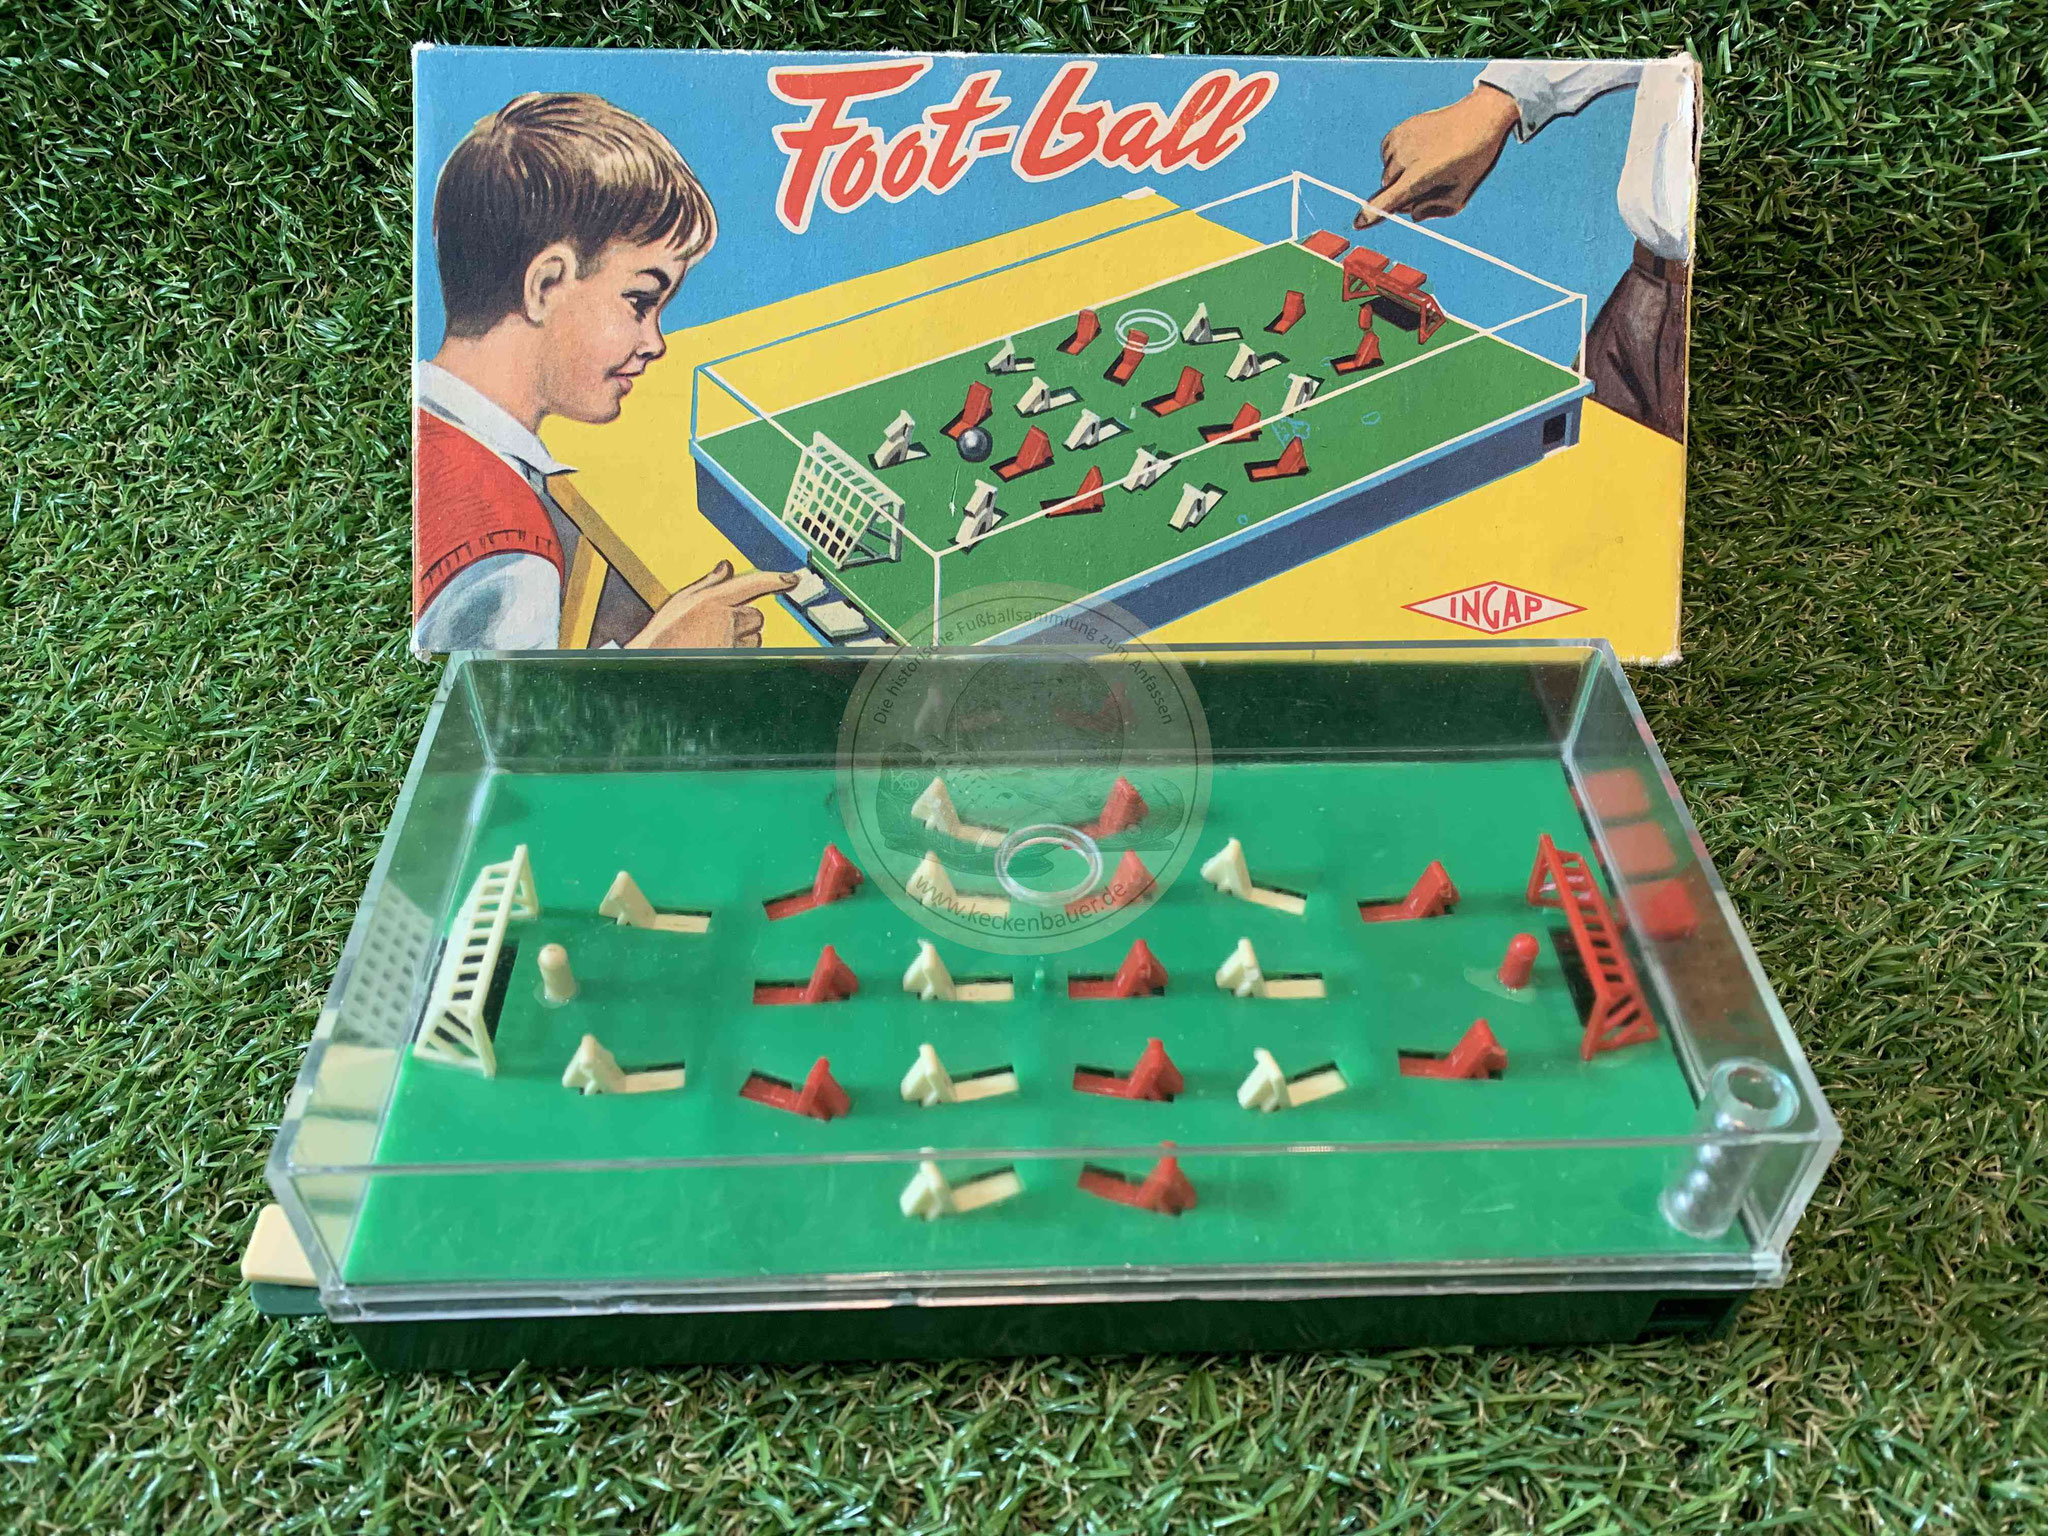 Foot-Ball von Ingap aus den 1960ern